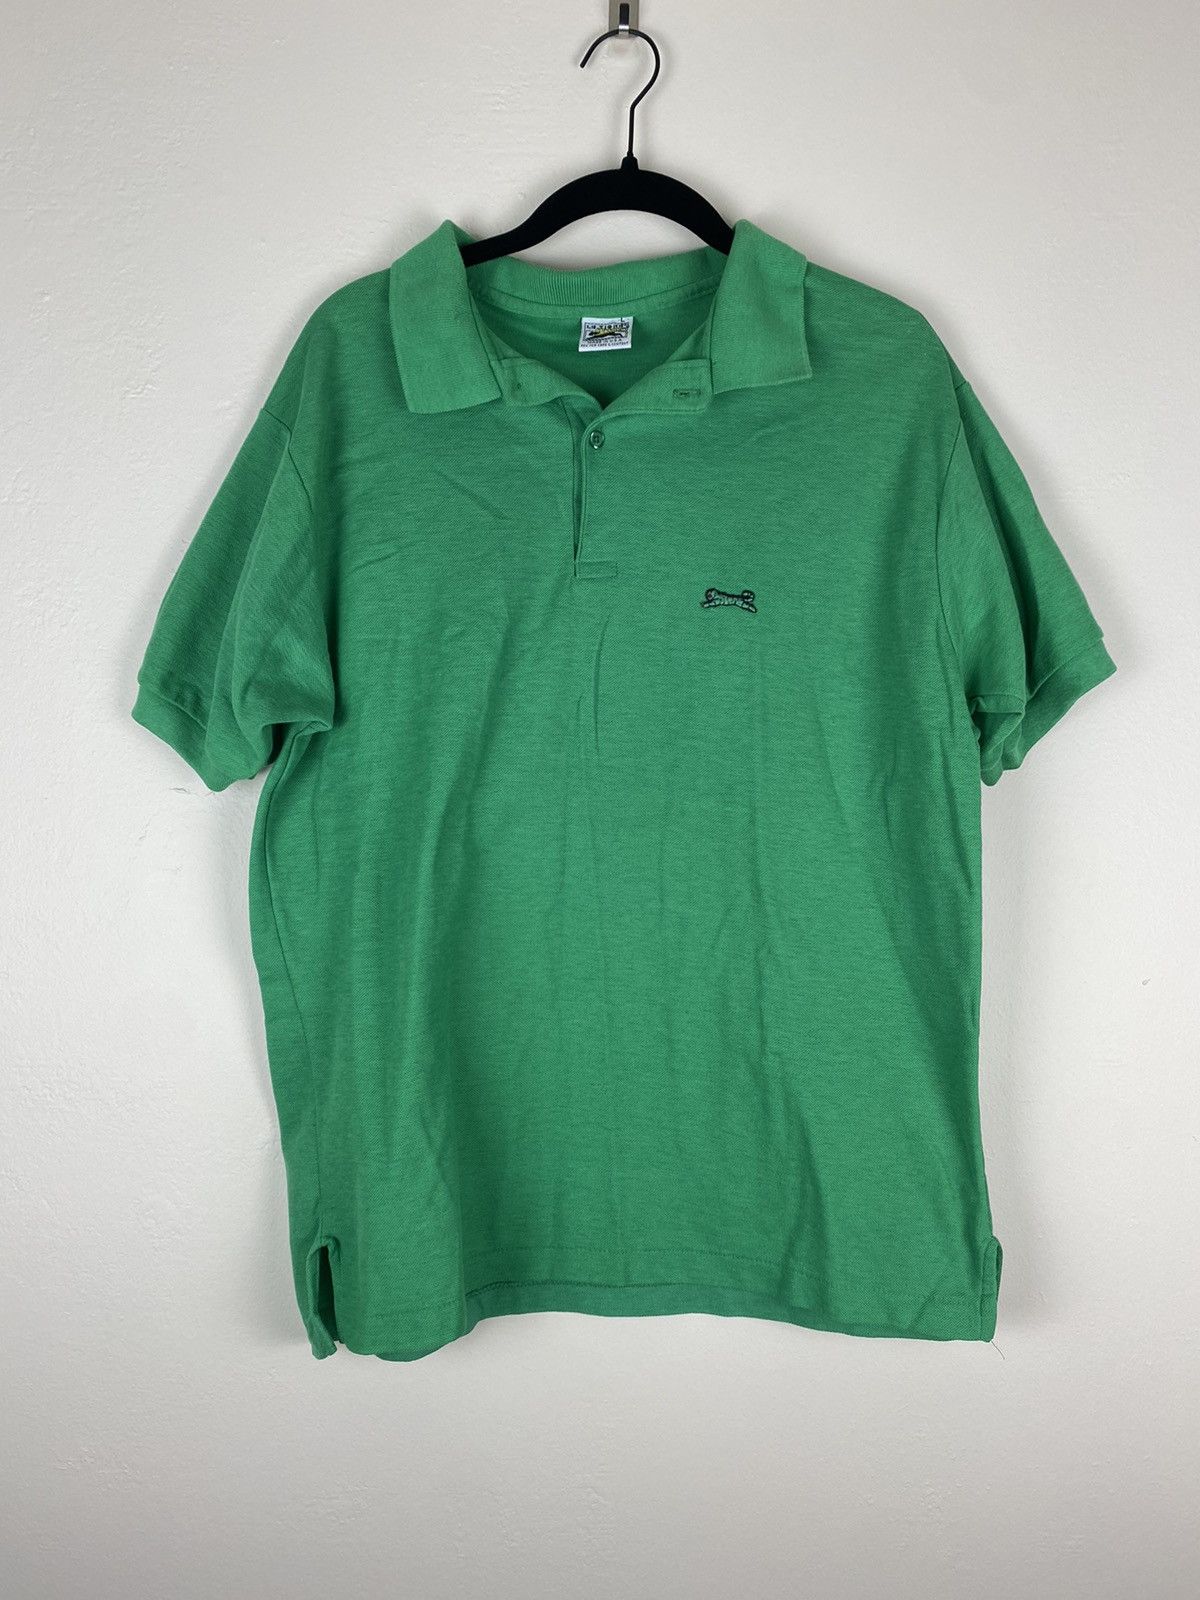 Vintage Vintage Rare Le Tigre Polo Shirt Green Made In Usa | Grailed